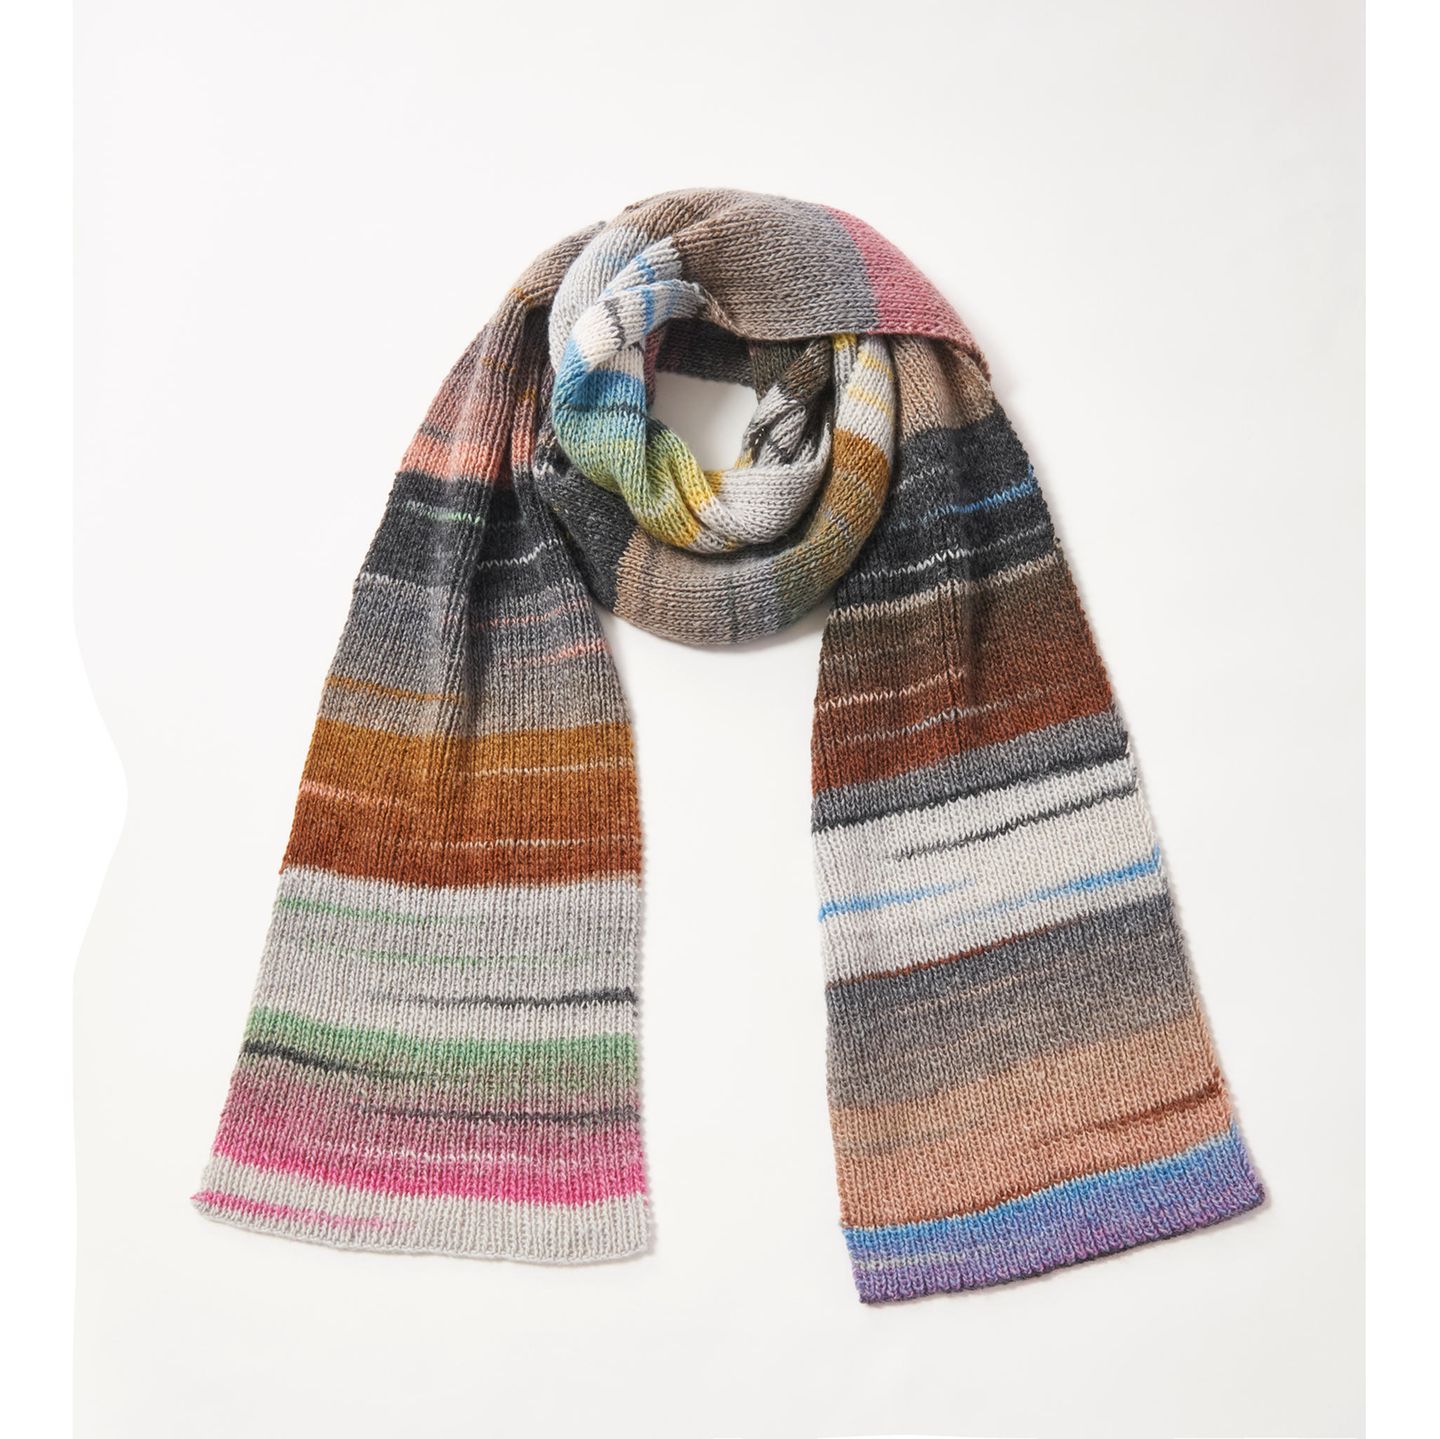 Großen Multicolor-Schal stricken ein gestreifter bunter Schal